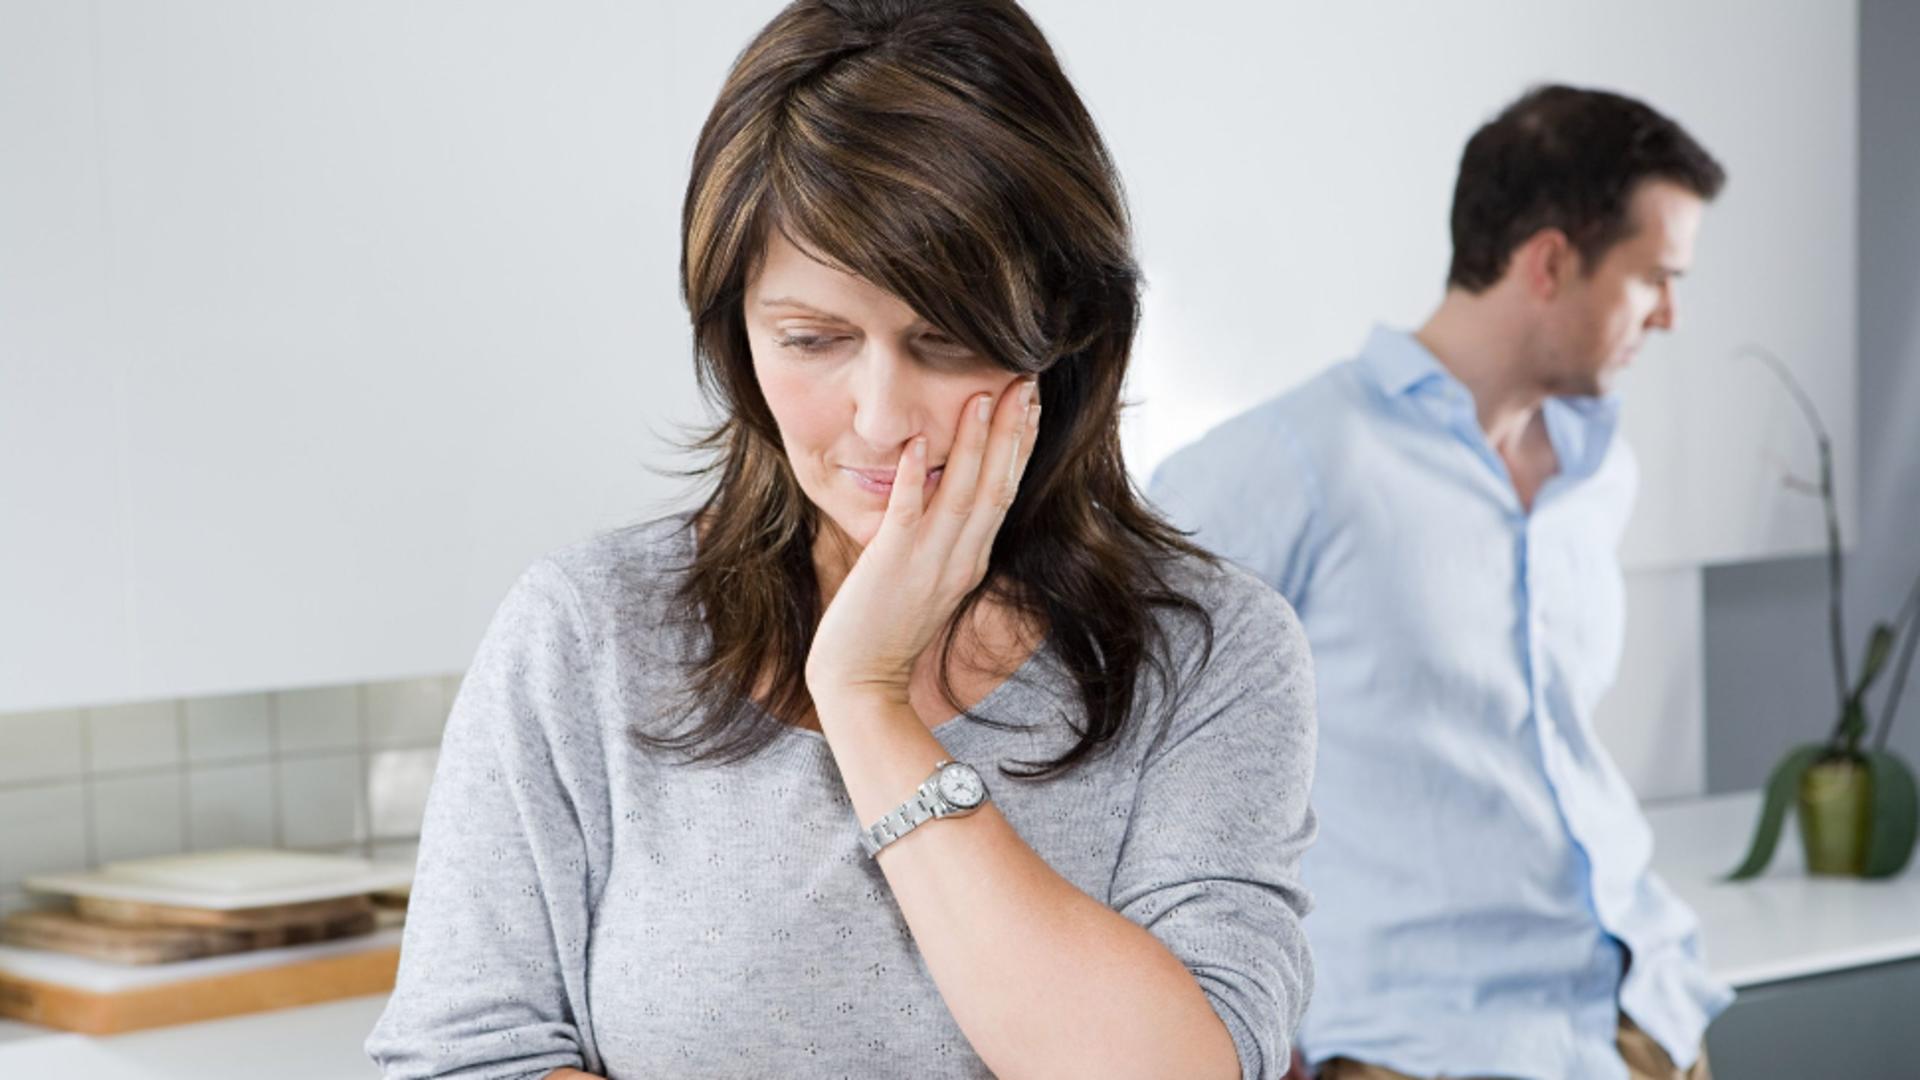 Principalele 8 motive de divorț – Cum le putem preîntâmpina